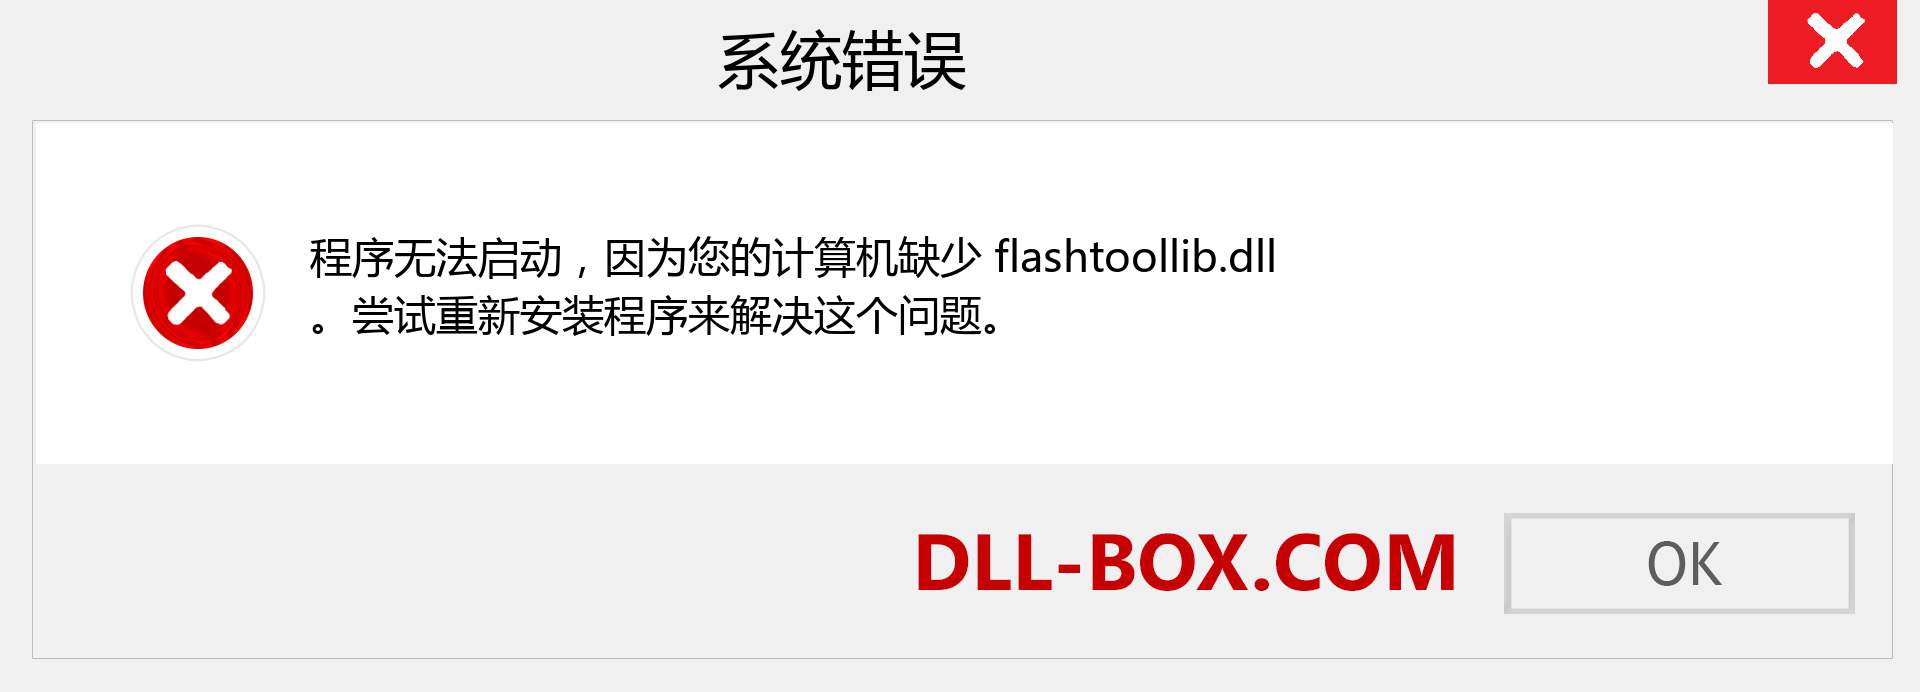 flashtoollib.dll 文件丢失？。 适用于 Windows 7、8、10 的下载 - 修复 Windows、照片、图像上的 flashtoollib dll 丢失错误